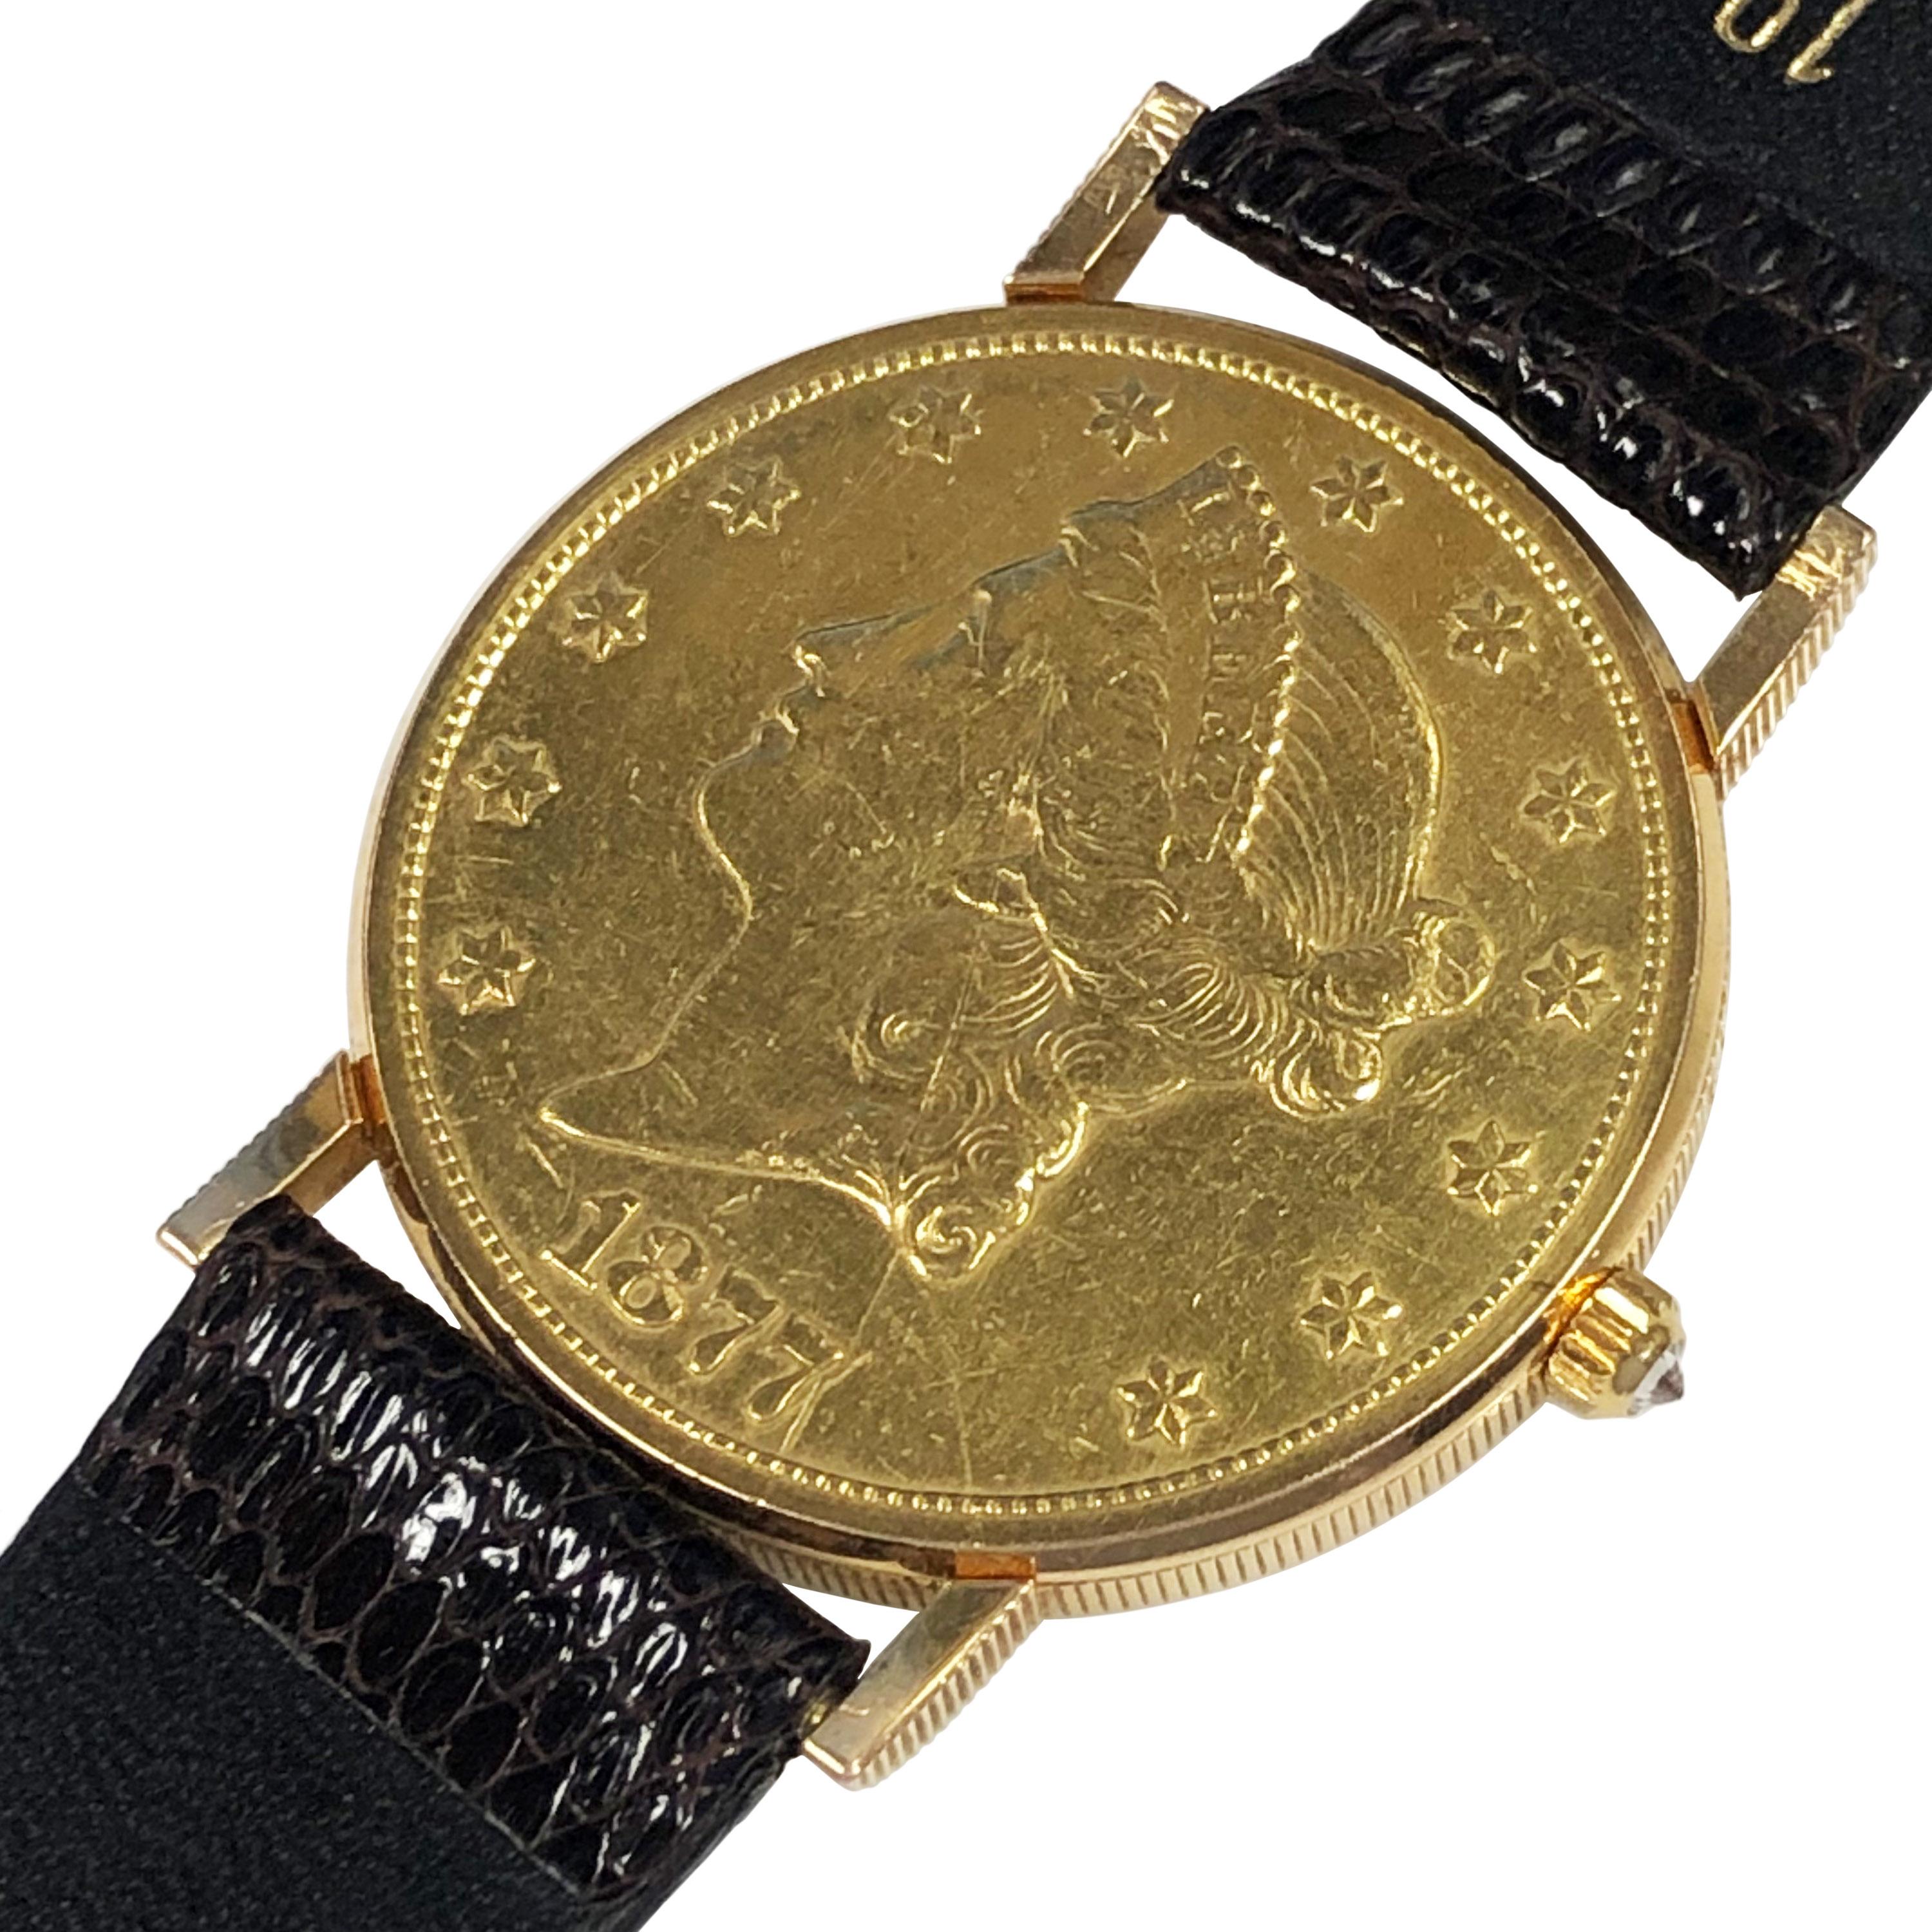 1877 gold 20 dollar coin